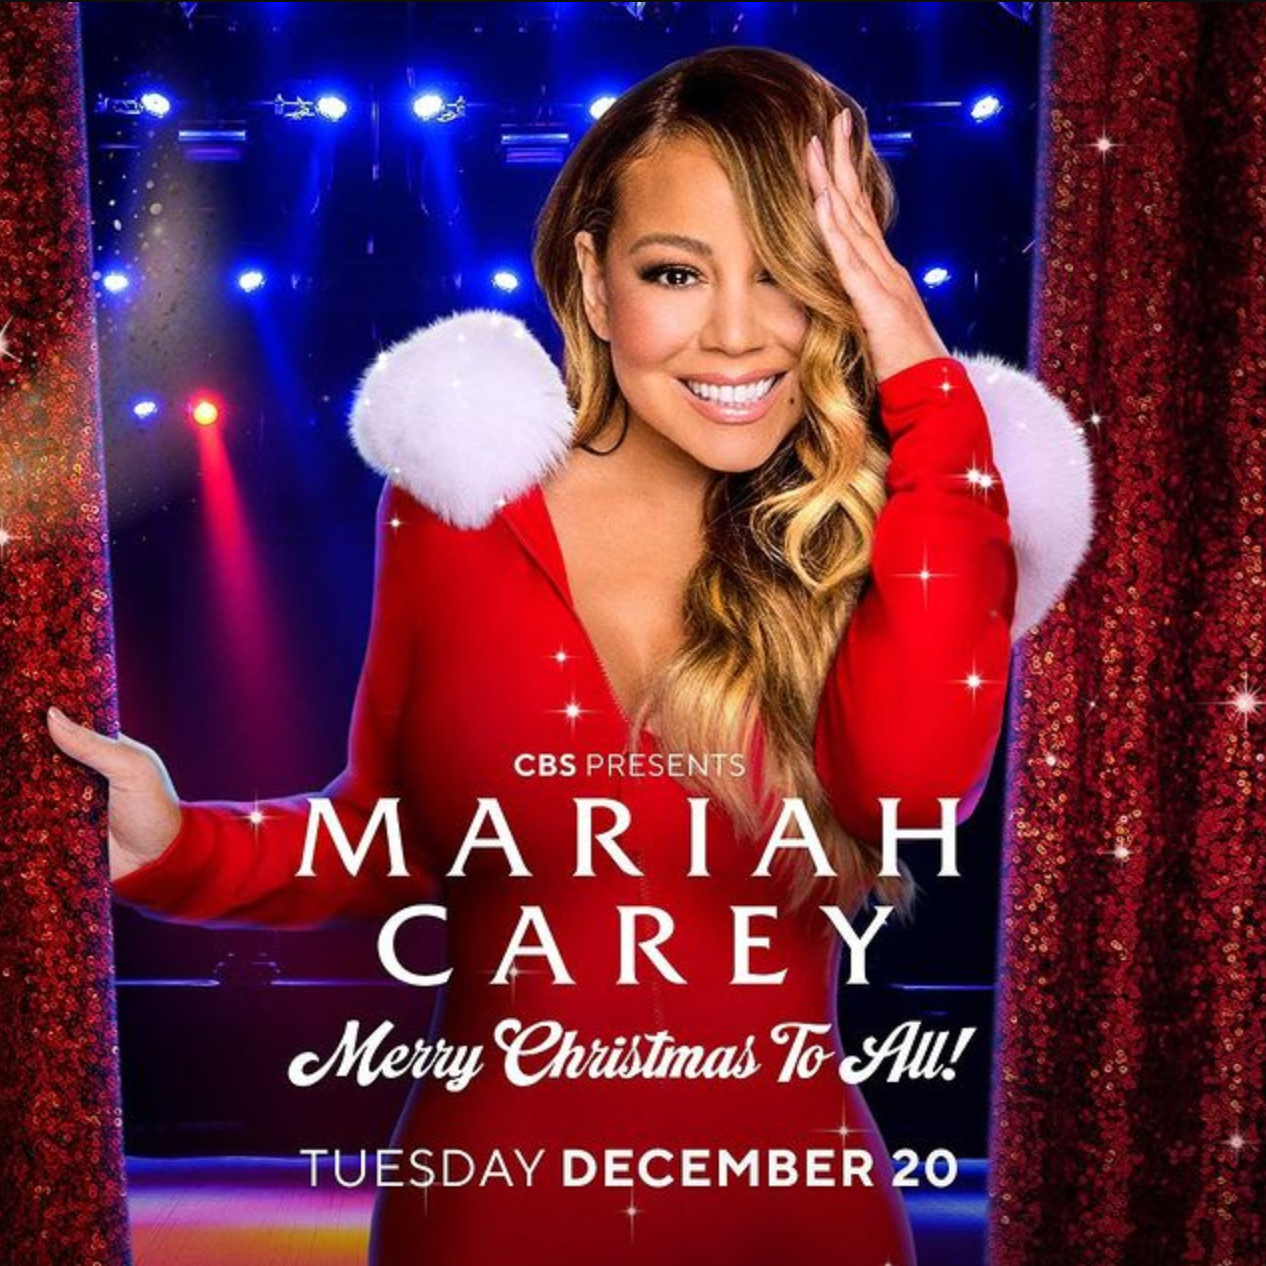 How to Watch Mariah Carey's 2022 Christmas Special 'Mariah Carey